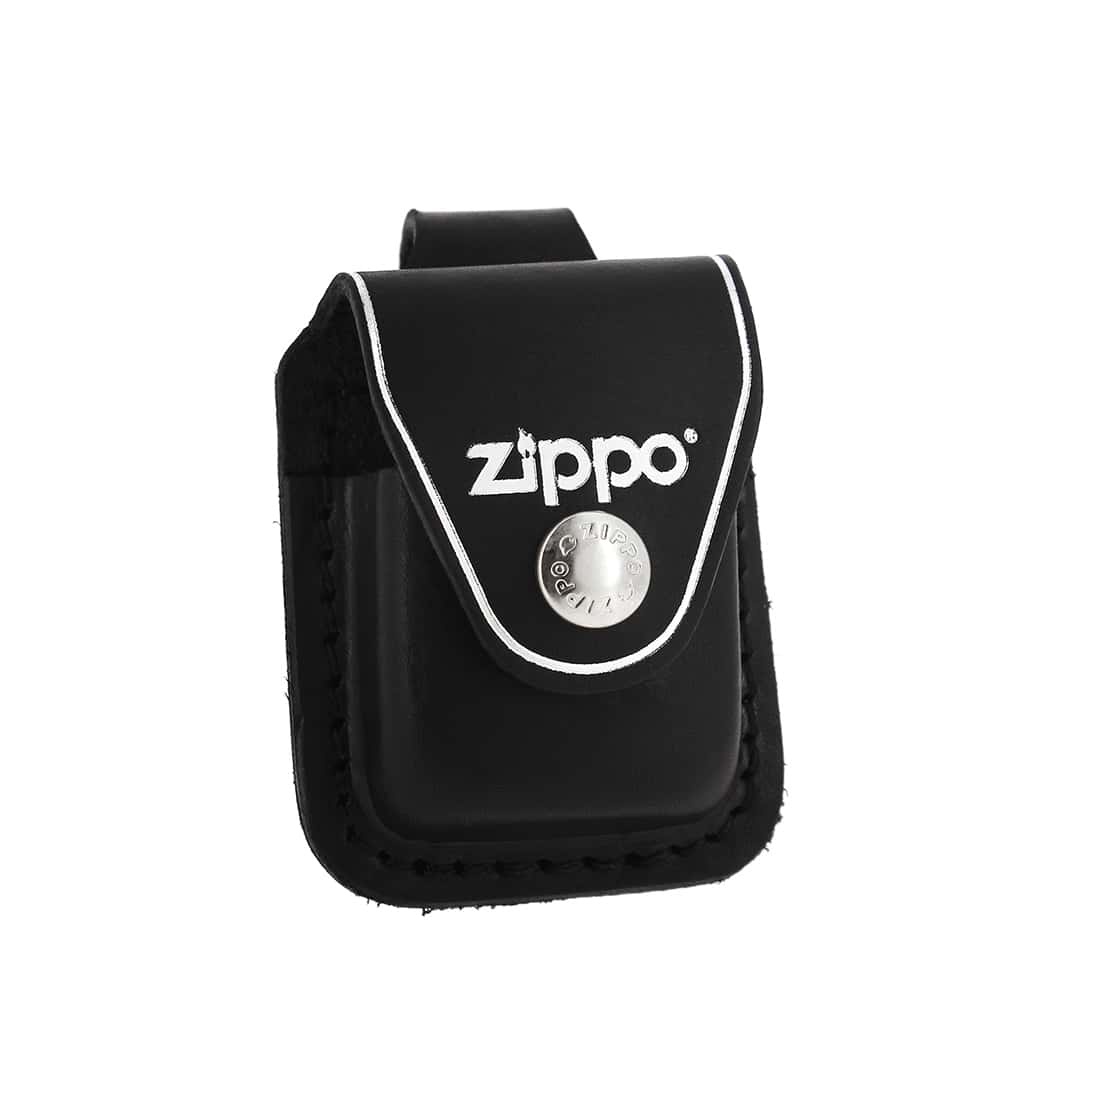 Zippo étui en cuir noir à passant pour briquet Zippo 850001221 - PW  Distribution